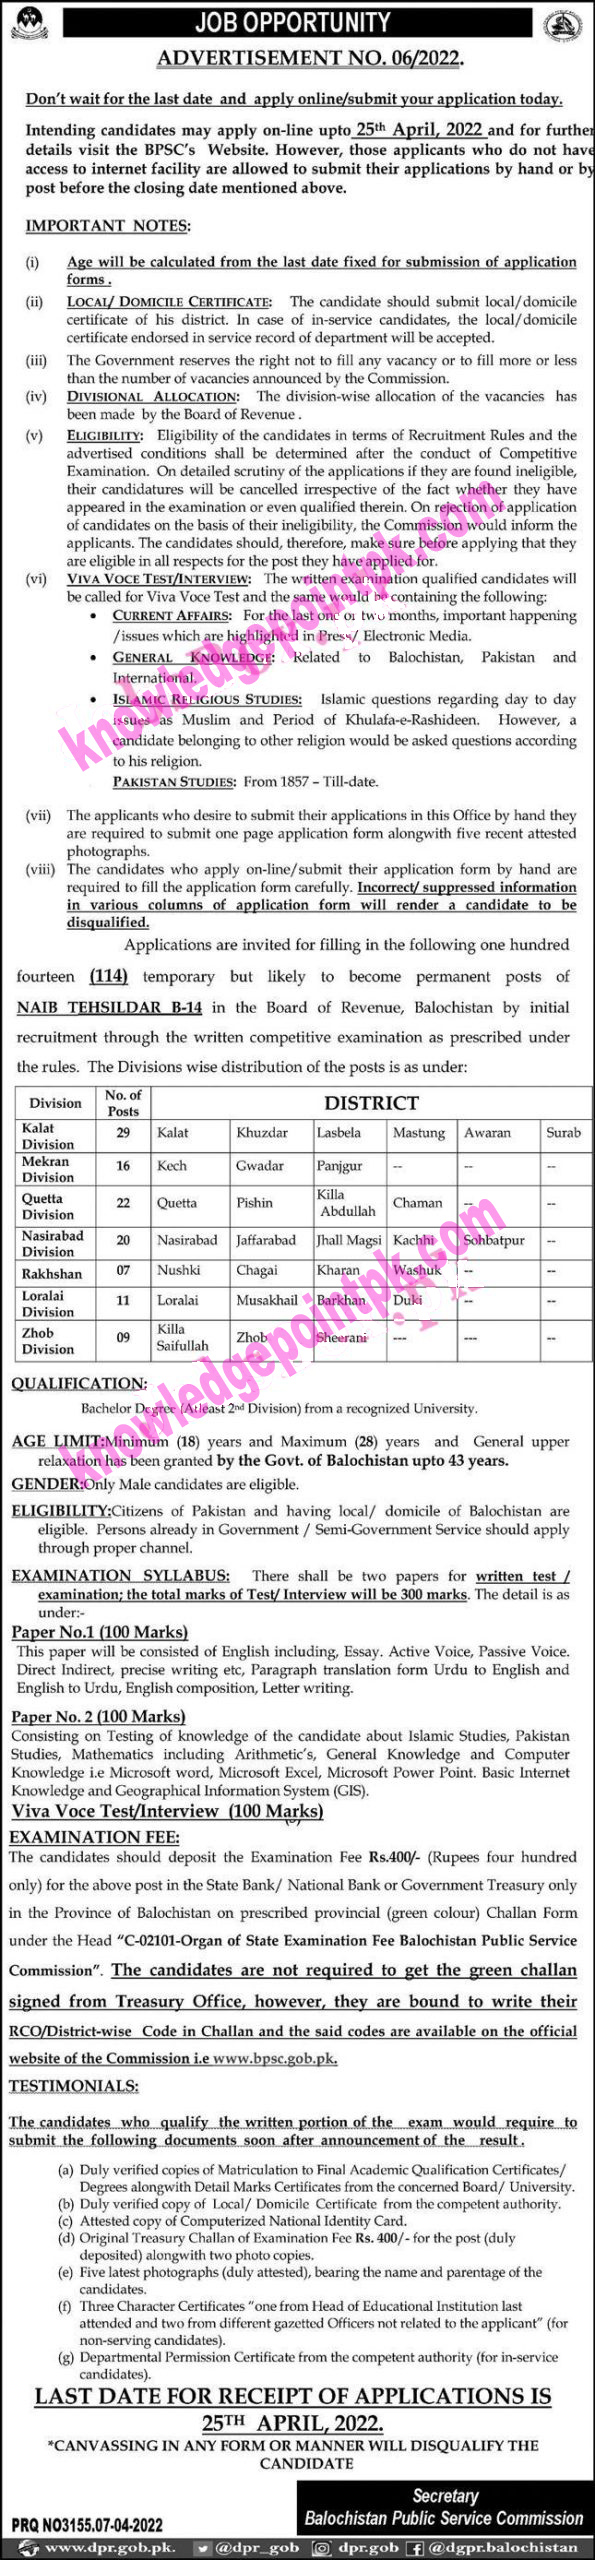 BPSC Jobs 2022 for Naib Tehsildar Ad No. 06/2022